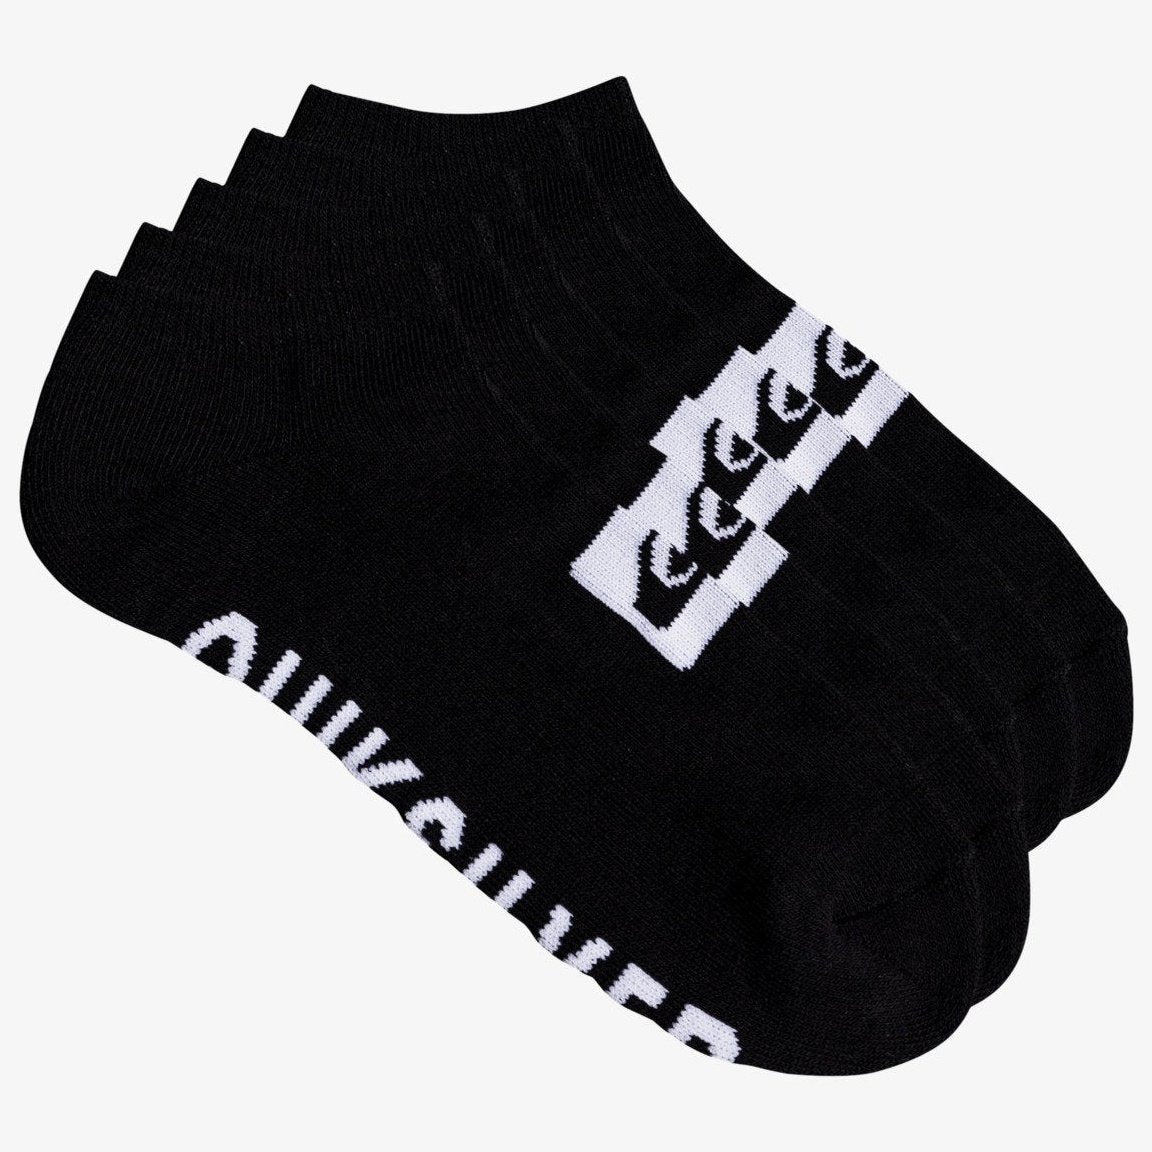 5 Pack - Ankle Socks for Men